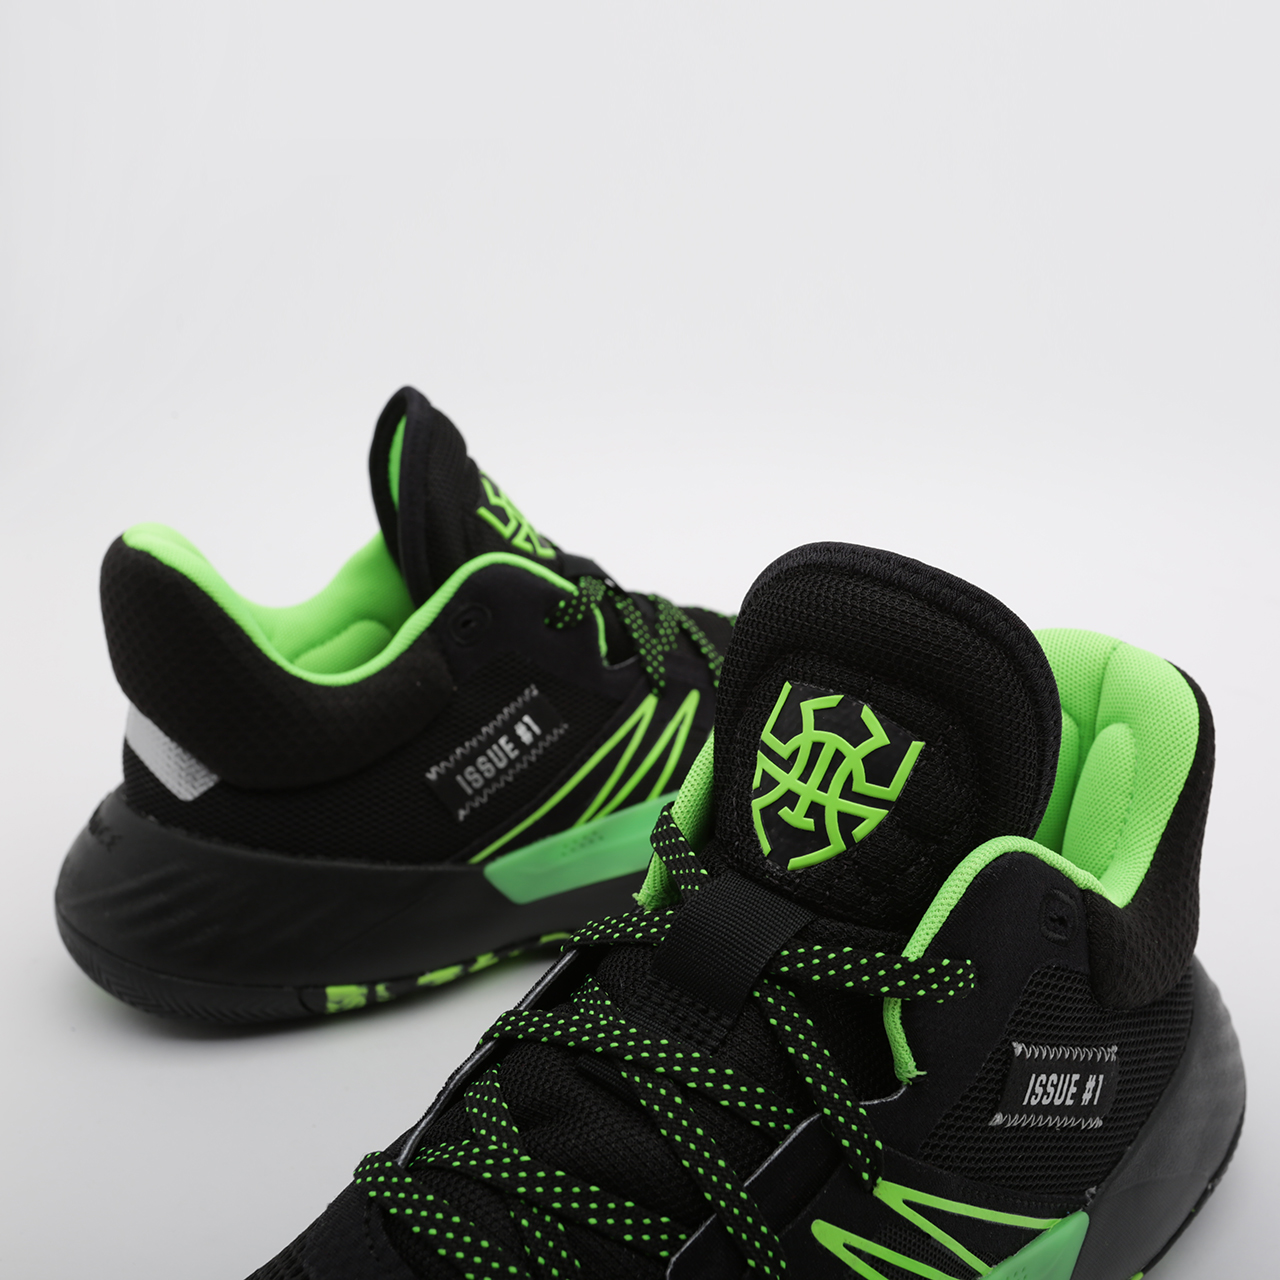 мужские черные баскетбольные кроссовки adidas D.O.N. Issue #1 EF2805 - цена, описание, фото 5